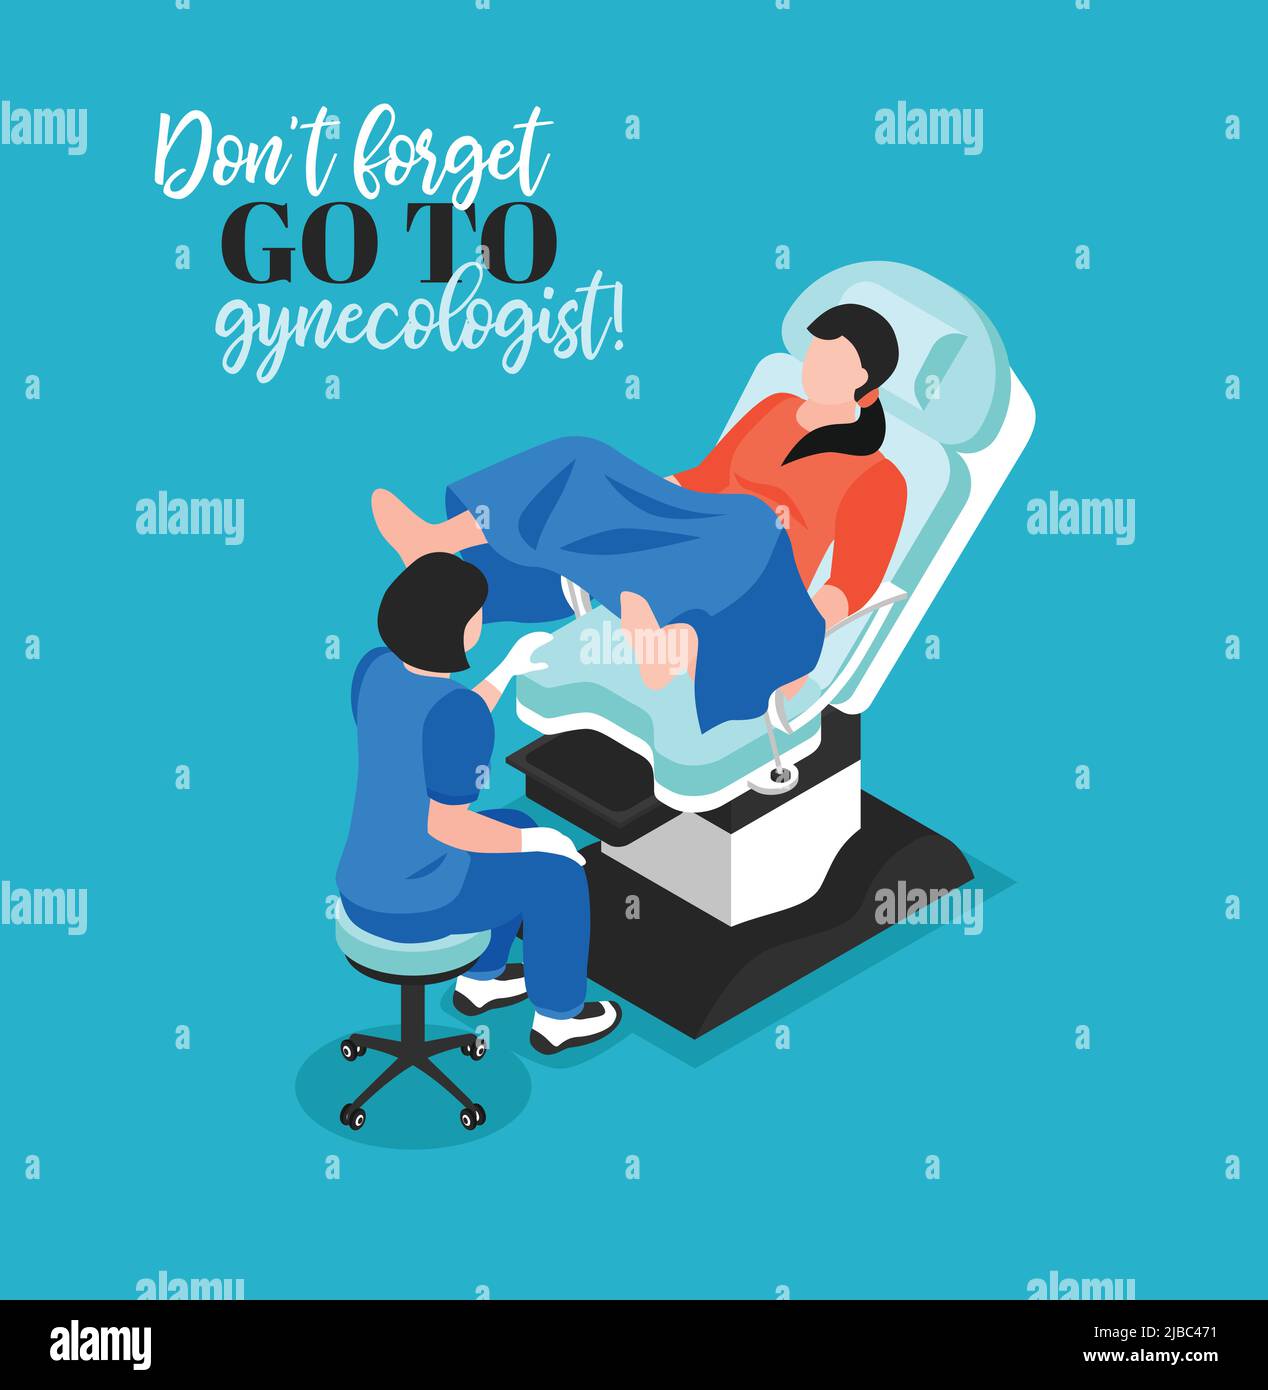 Nicht verzögern Besuch bei Gynäkologen isometrisches Poster mit Arzt untersucht weibliche Patientin in gynäkologischen Stuhl Vektor-Illustration Stock Vektor